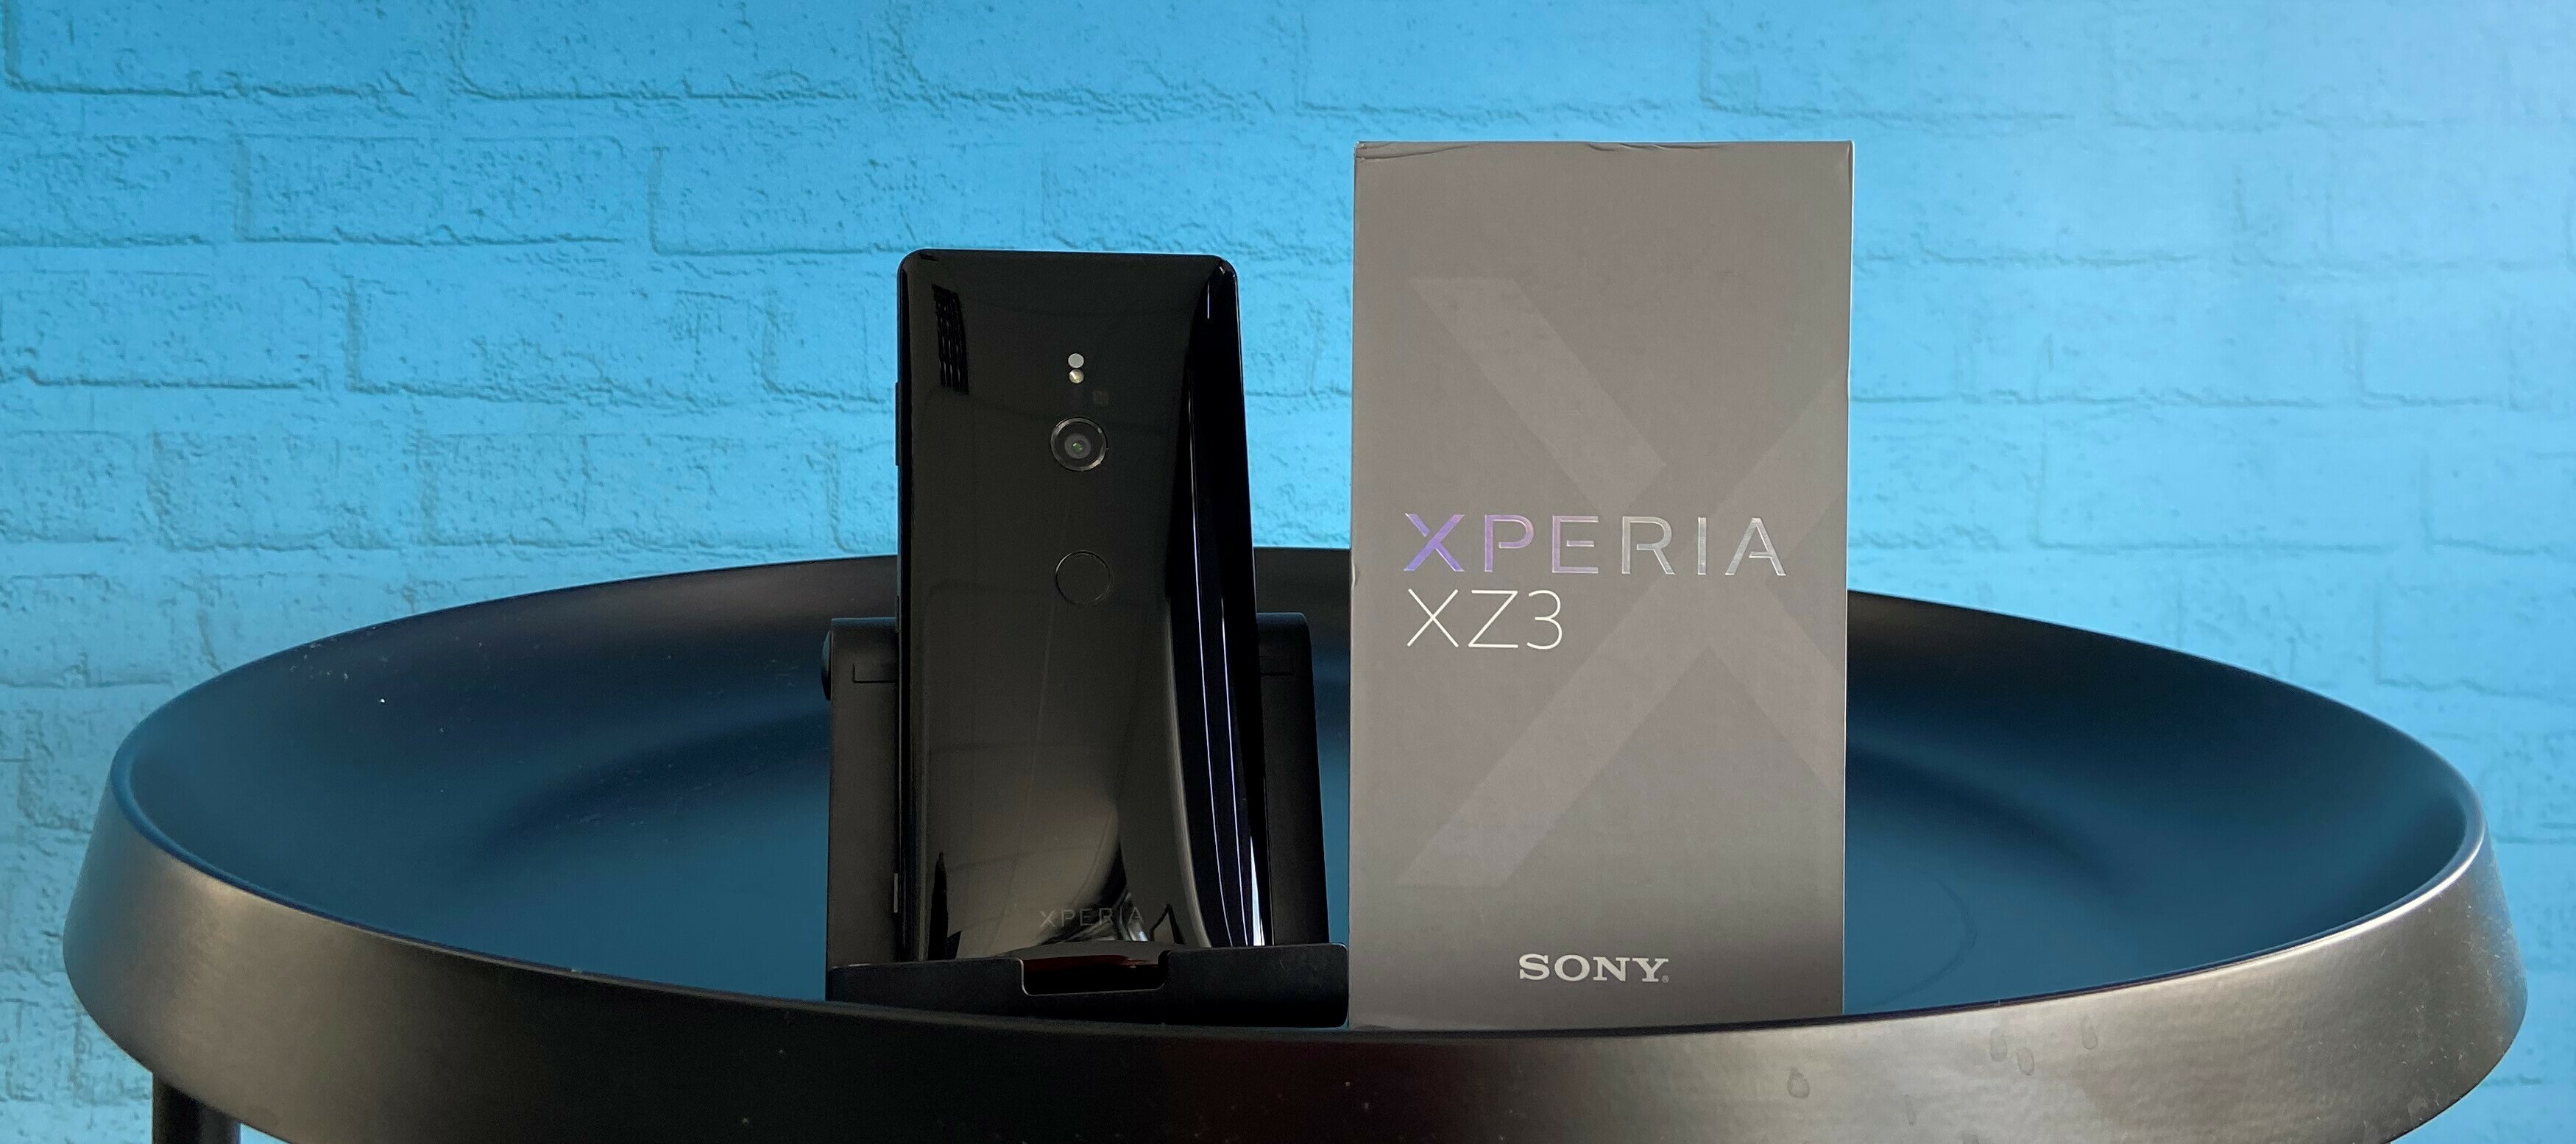 Produkttester/in gesucht - Das Sony Xperia XZ3 möchte noch einmal getestet werden - Jetzt bewerben!